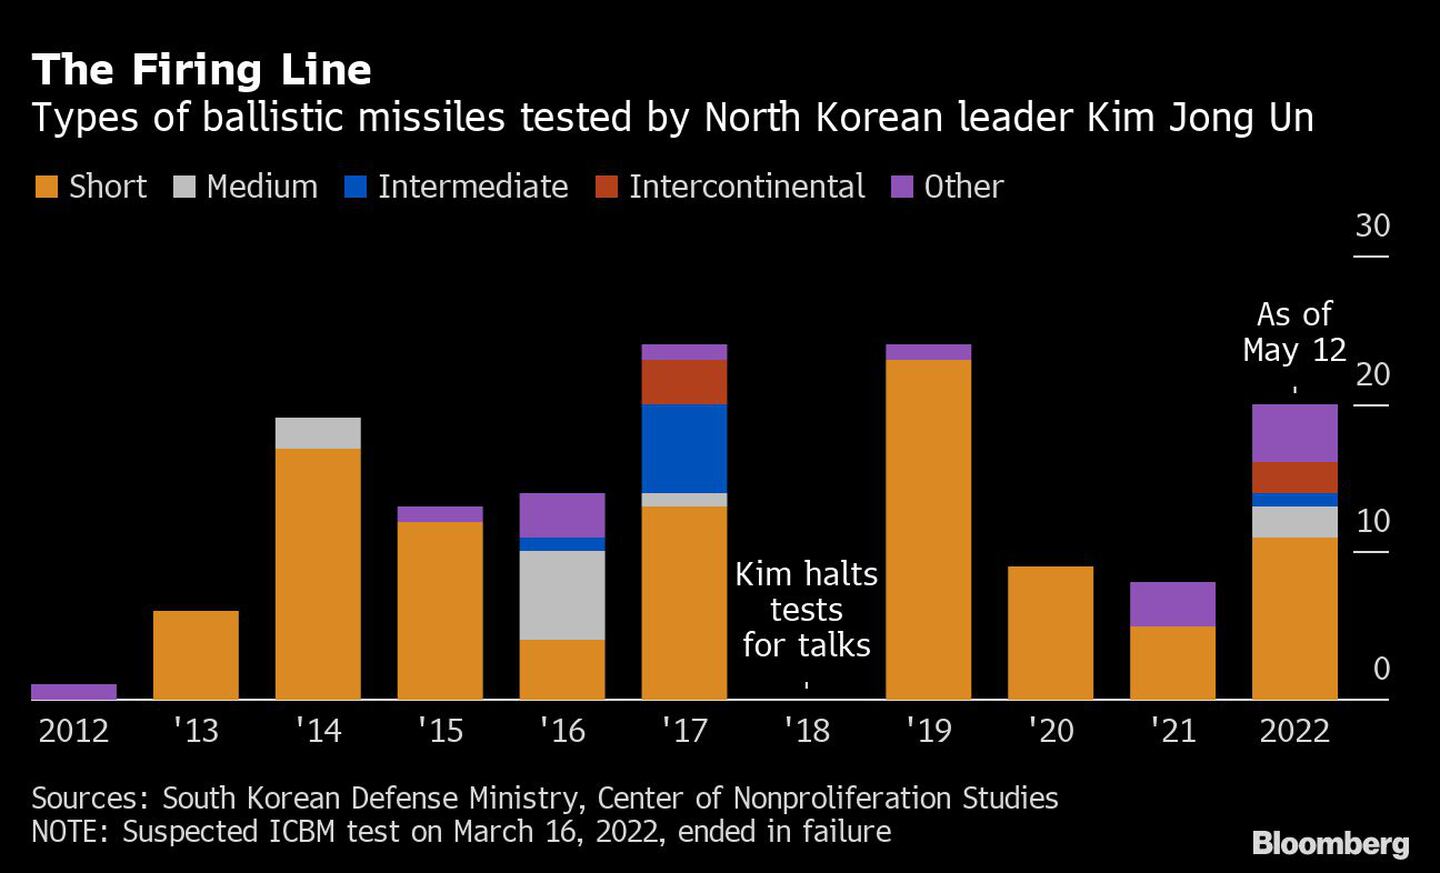 La línea de fuego | Tipos de misiles balísticos probados por el líder norcoreano Kim Jong Undfd